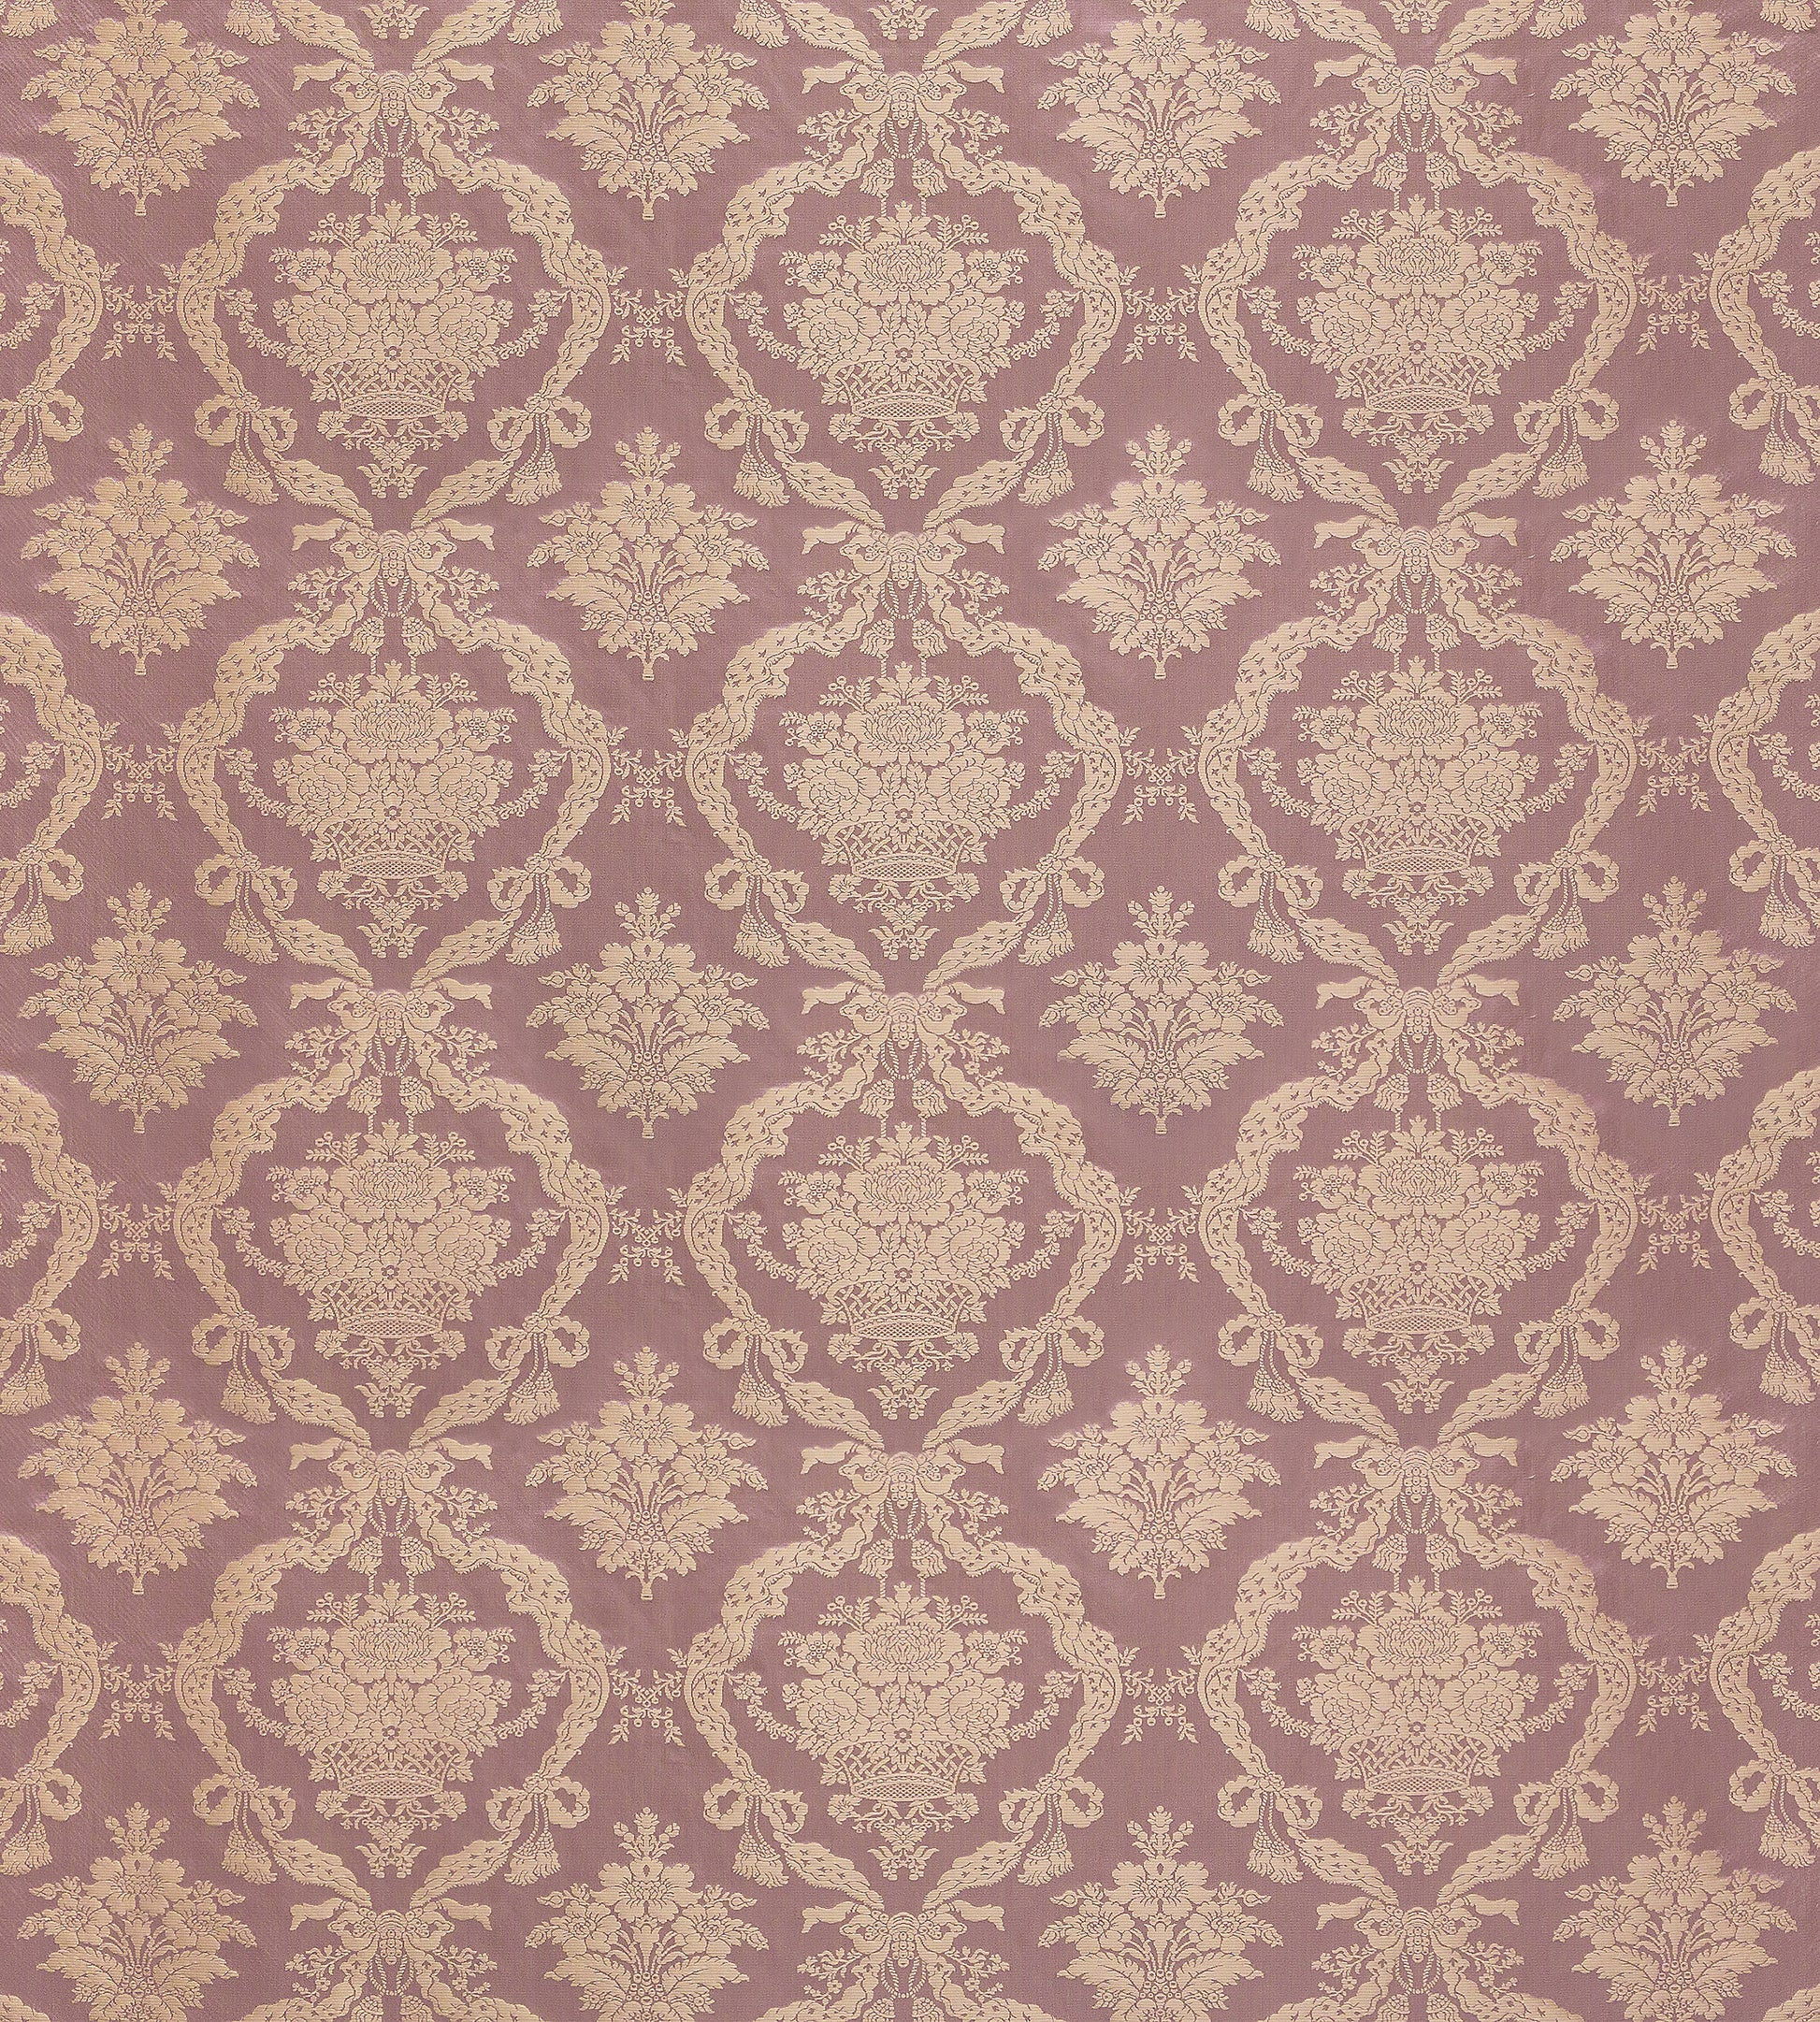 Purchase Old World Weavers Fabric Pattern number ZA 2204PETR, Petrarca Damasco Mauve 1